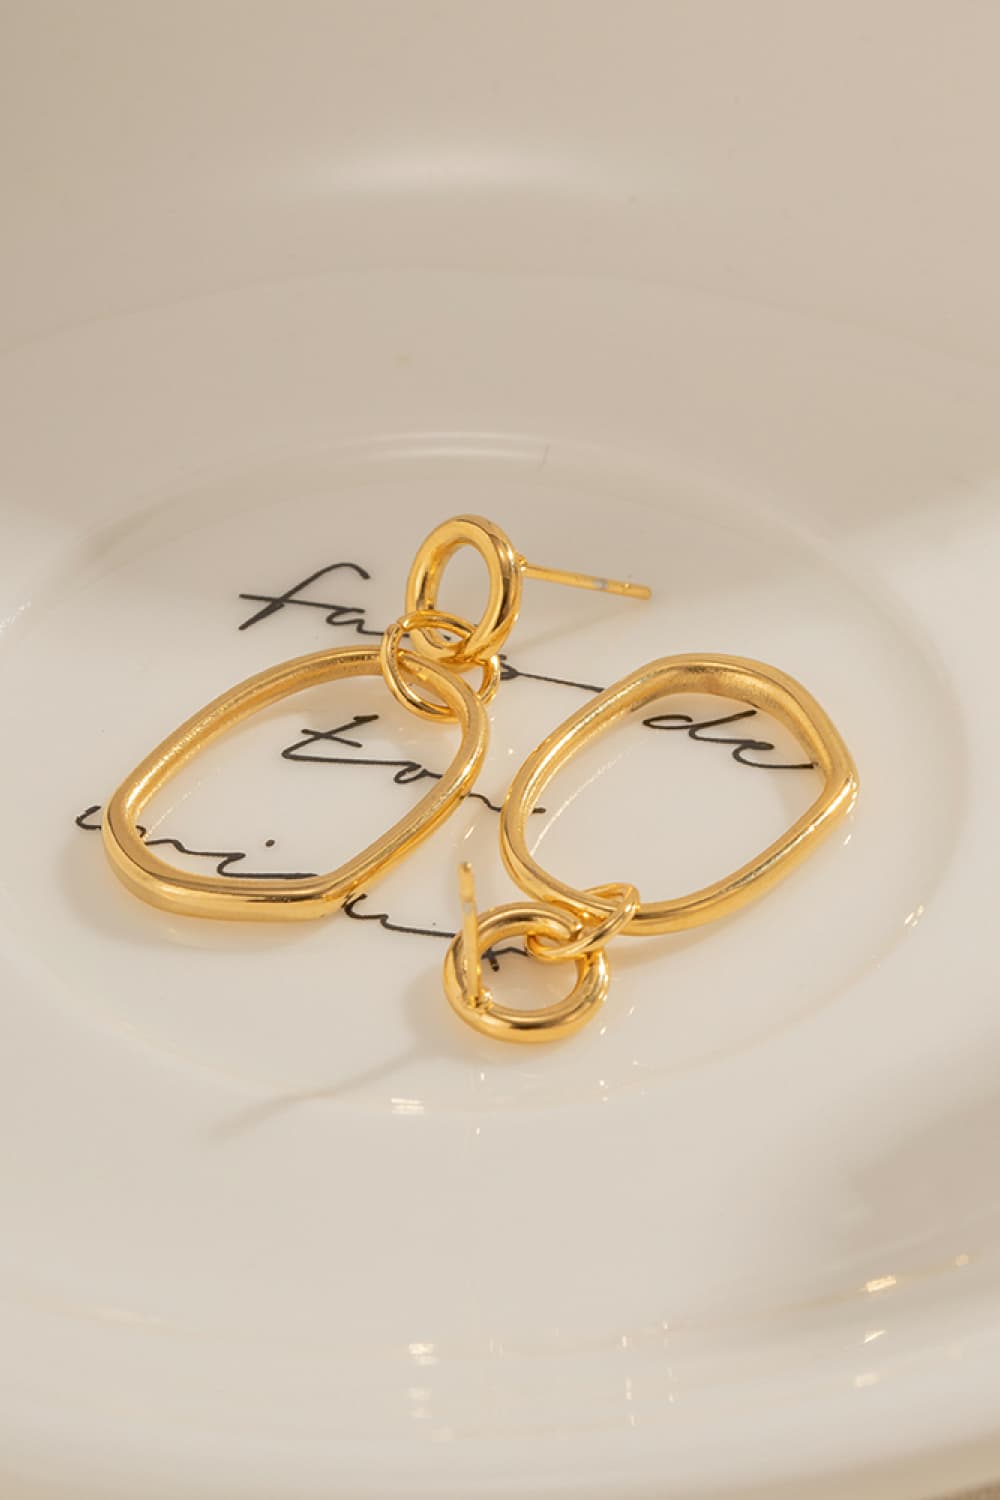 18K Gold-Plated Dangle Earrings